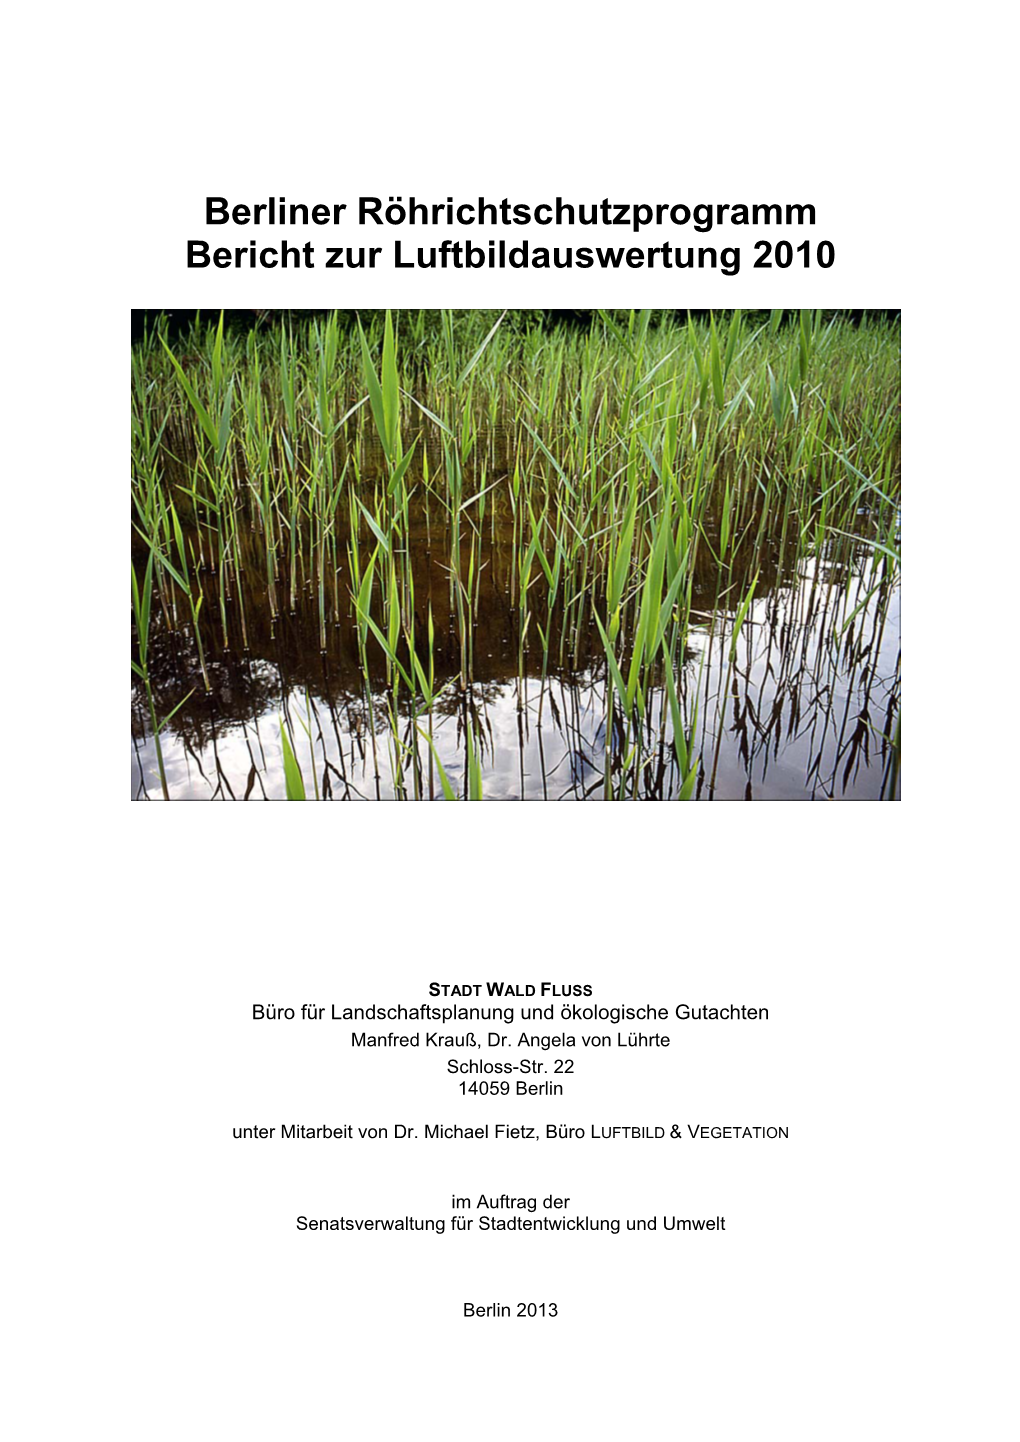 Berliner Röhrichtschutzprogramm Bericht Zur Luftbildauswertung 2010